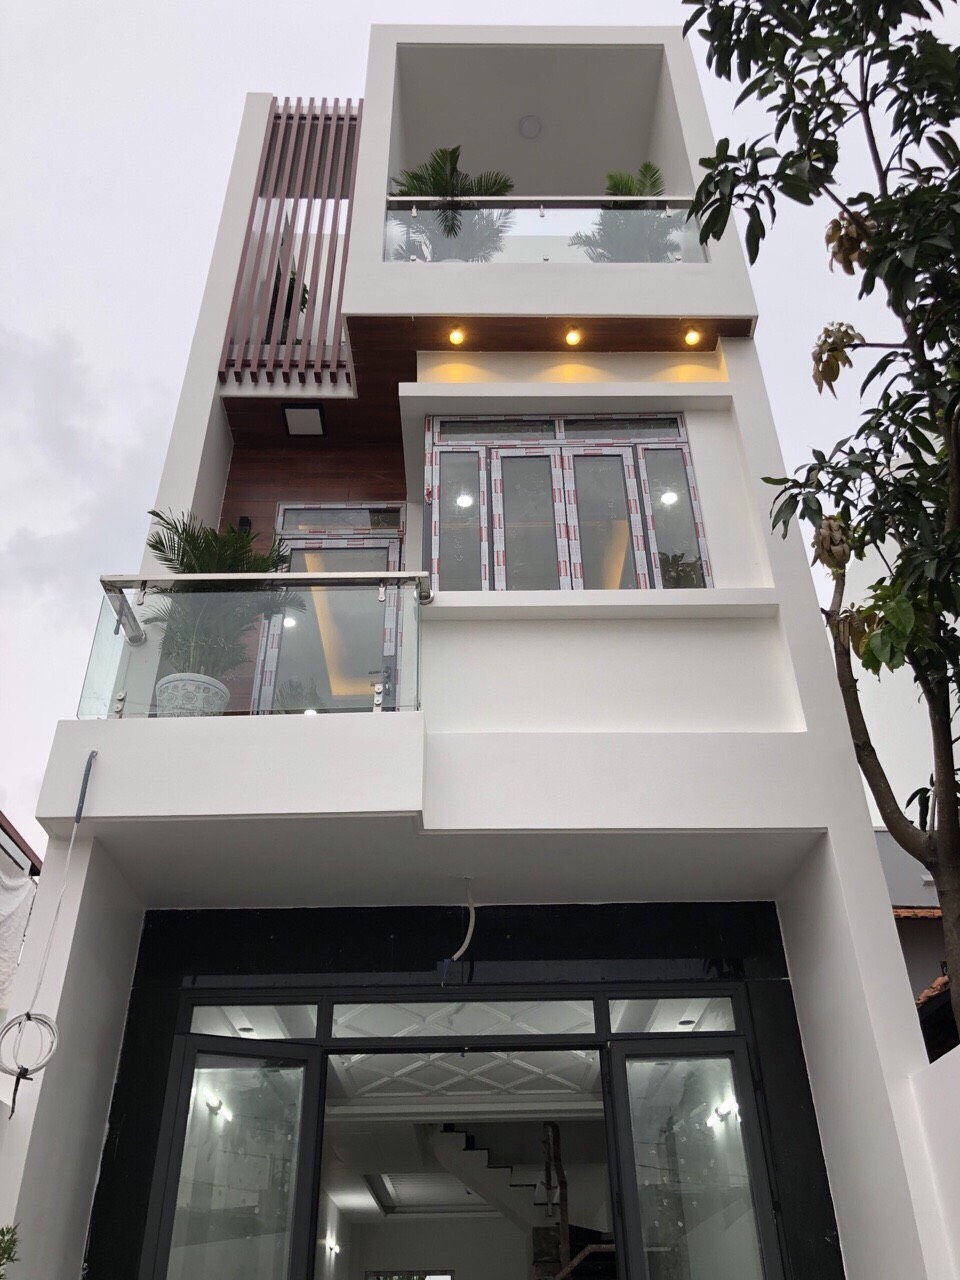 Bán nhà mới đẹp mặt tiền hẻm kinh doanh tốt Huỳnh Tấn Phát, Nhà Bè, DT 4x25m.Giá 4,85 tỷ